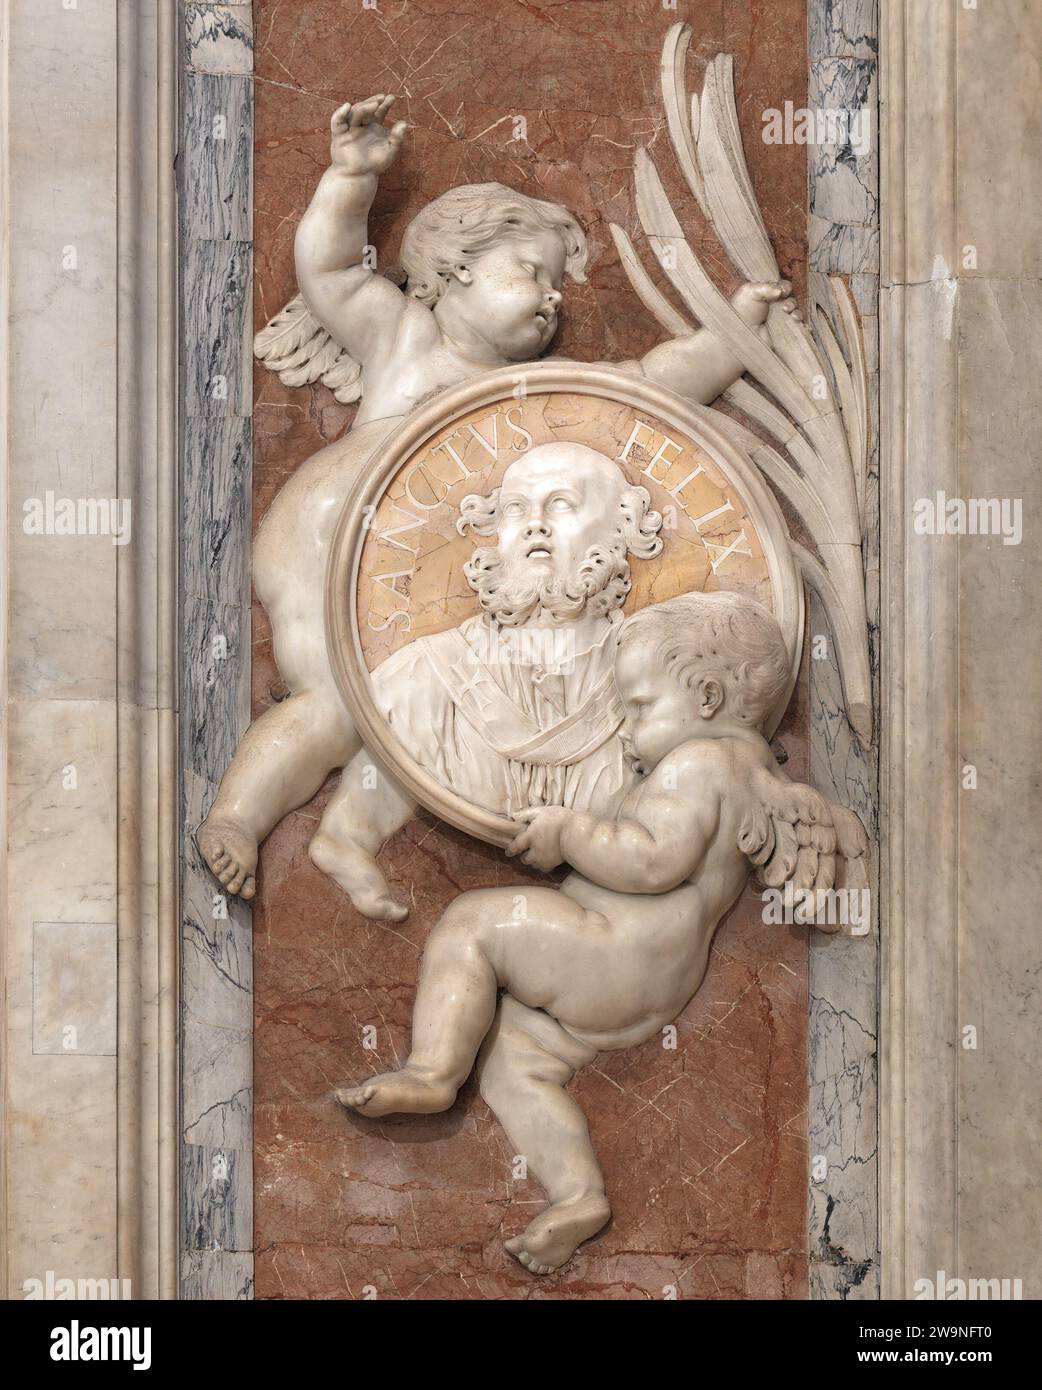 Plaque commémorative du pape Saint Félix Ier, mort en 274 après J.-C., dans la basilique Saint-Pierre, Vatican, Rome, Italie Banque D'Images